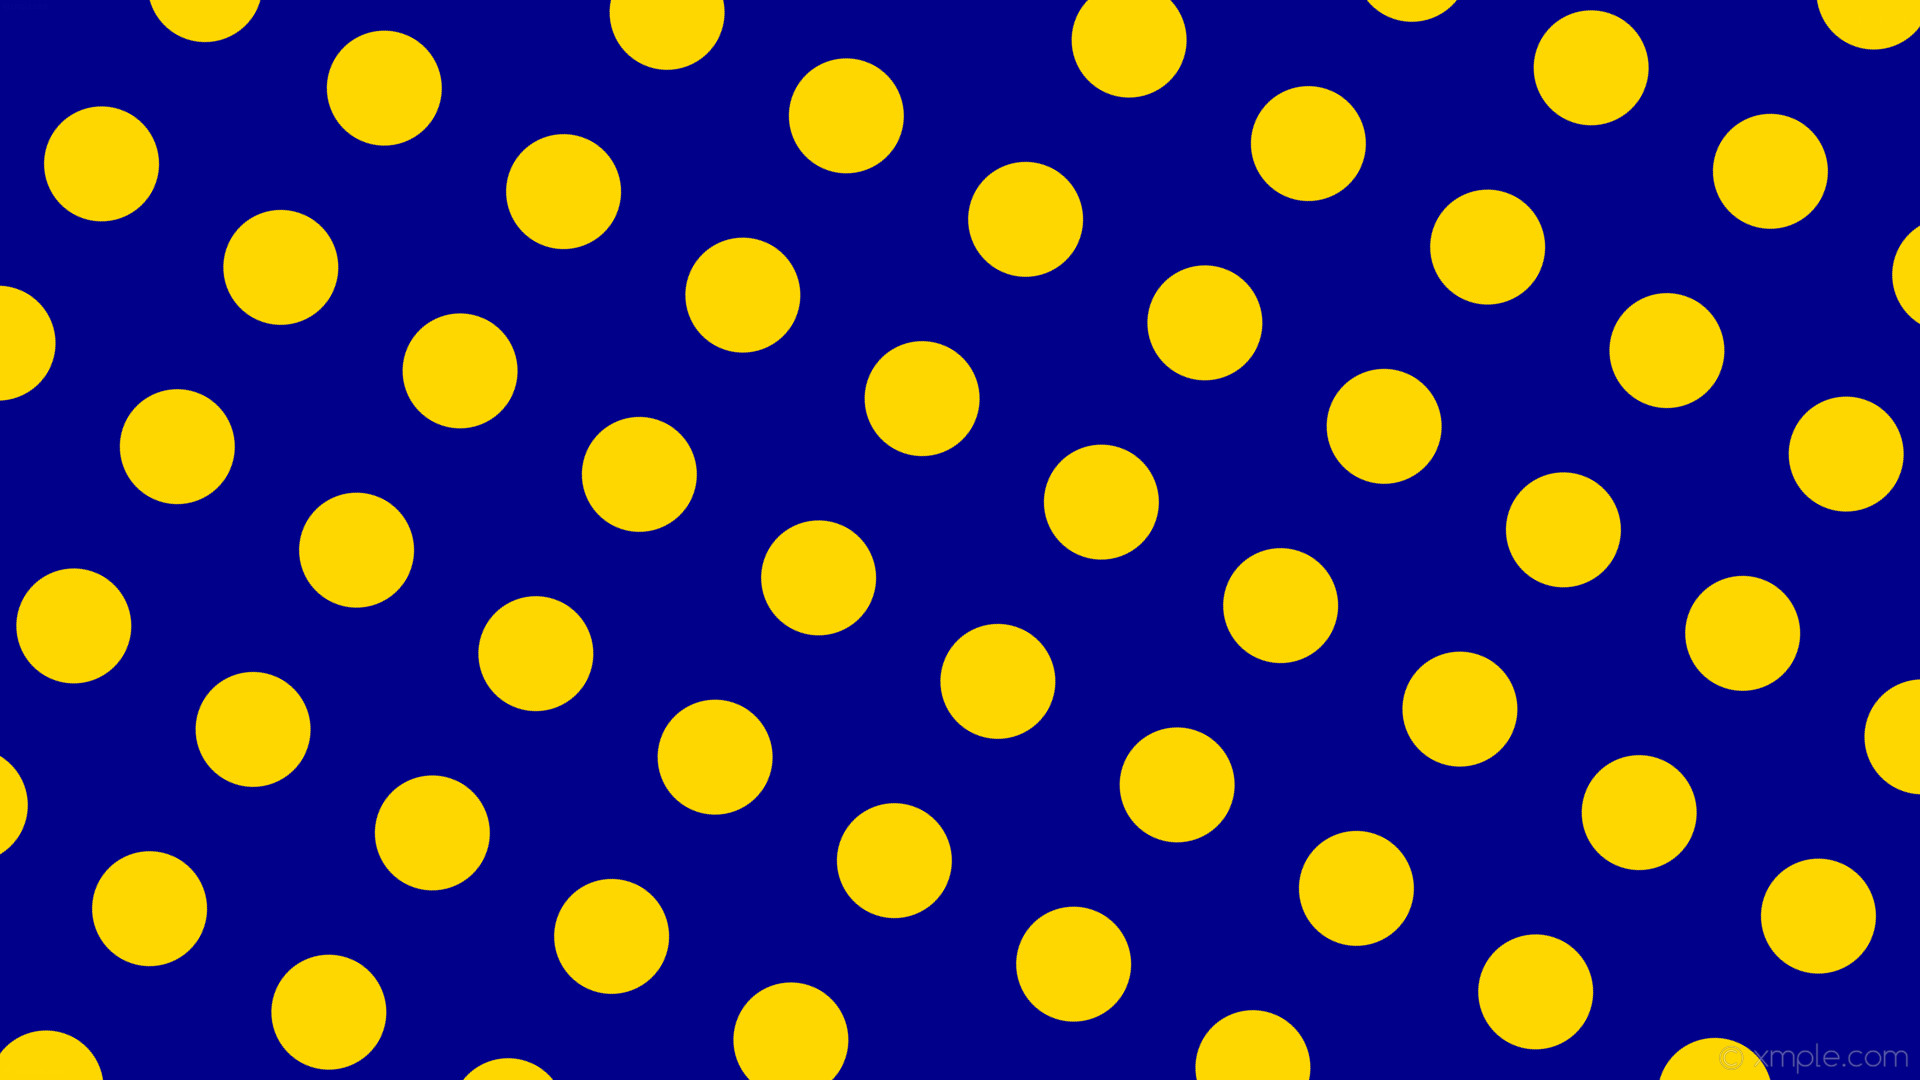 1920x1080 wallpaper yellow spots blue polka dots dark blue gold #00008b #ffd700 60Â°  115px